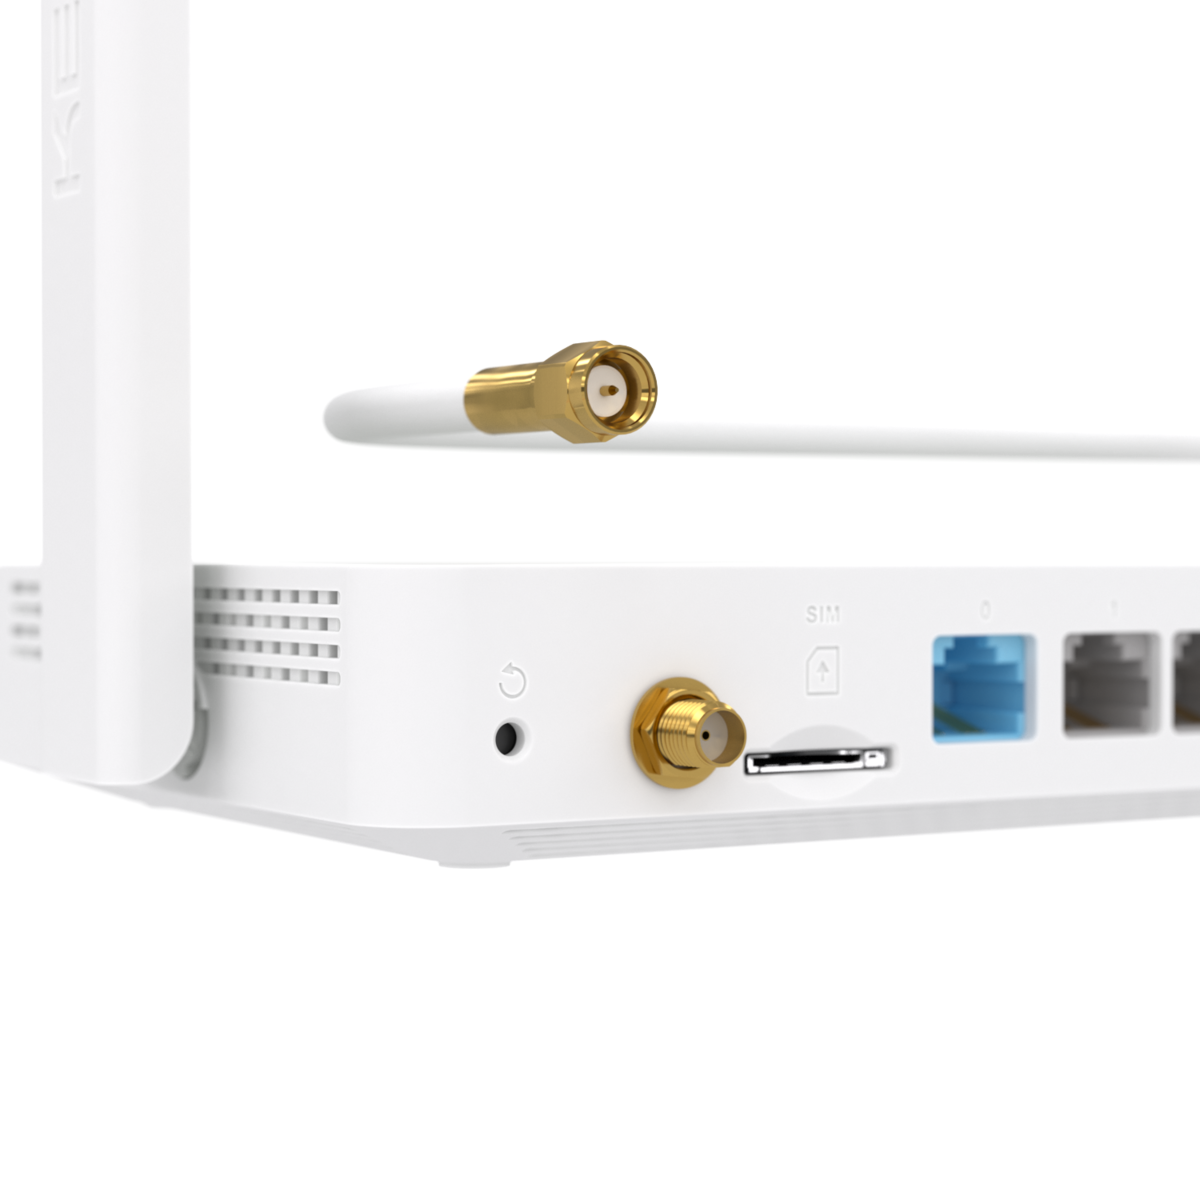 Interfaccia utente multilingue Router wireless 4G KN-2210 switch intelligente a 4 porte N300 utilizzo con schede SIM LTE//4G//3G per Wi-Fi dalla rete telefonica mobile Keenetic Runner 4g